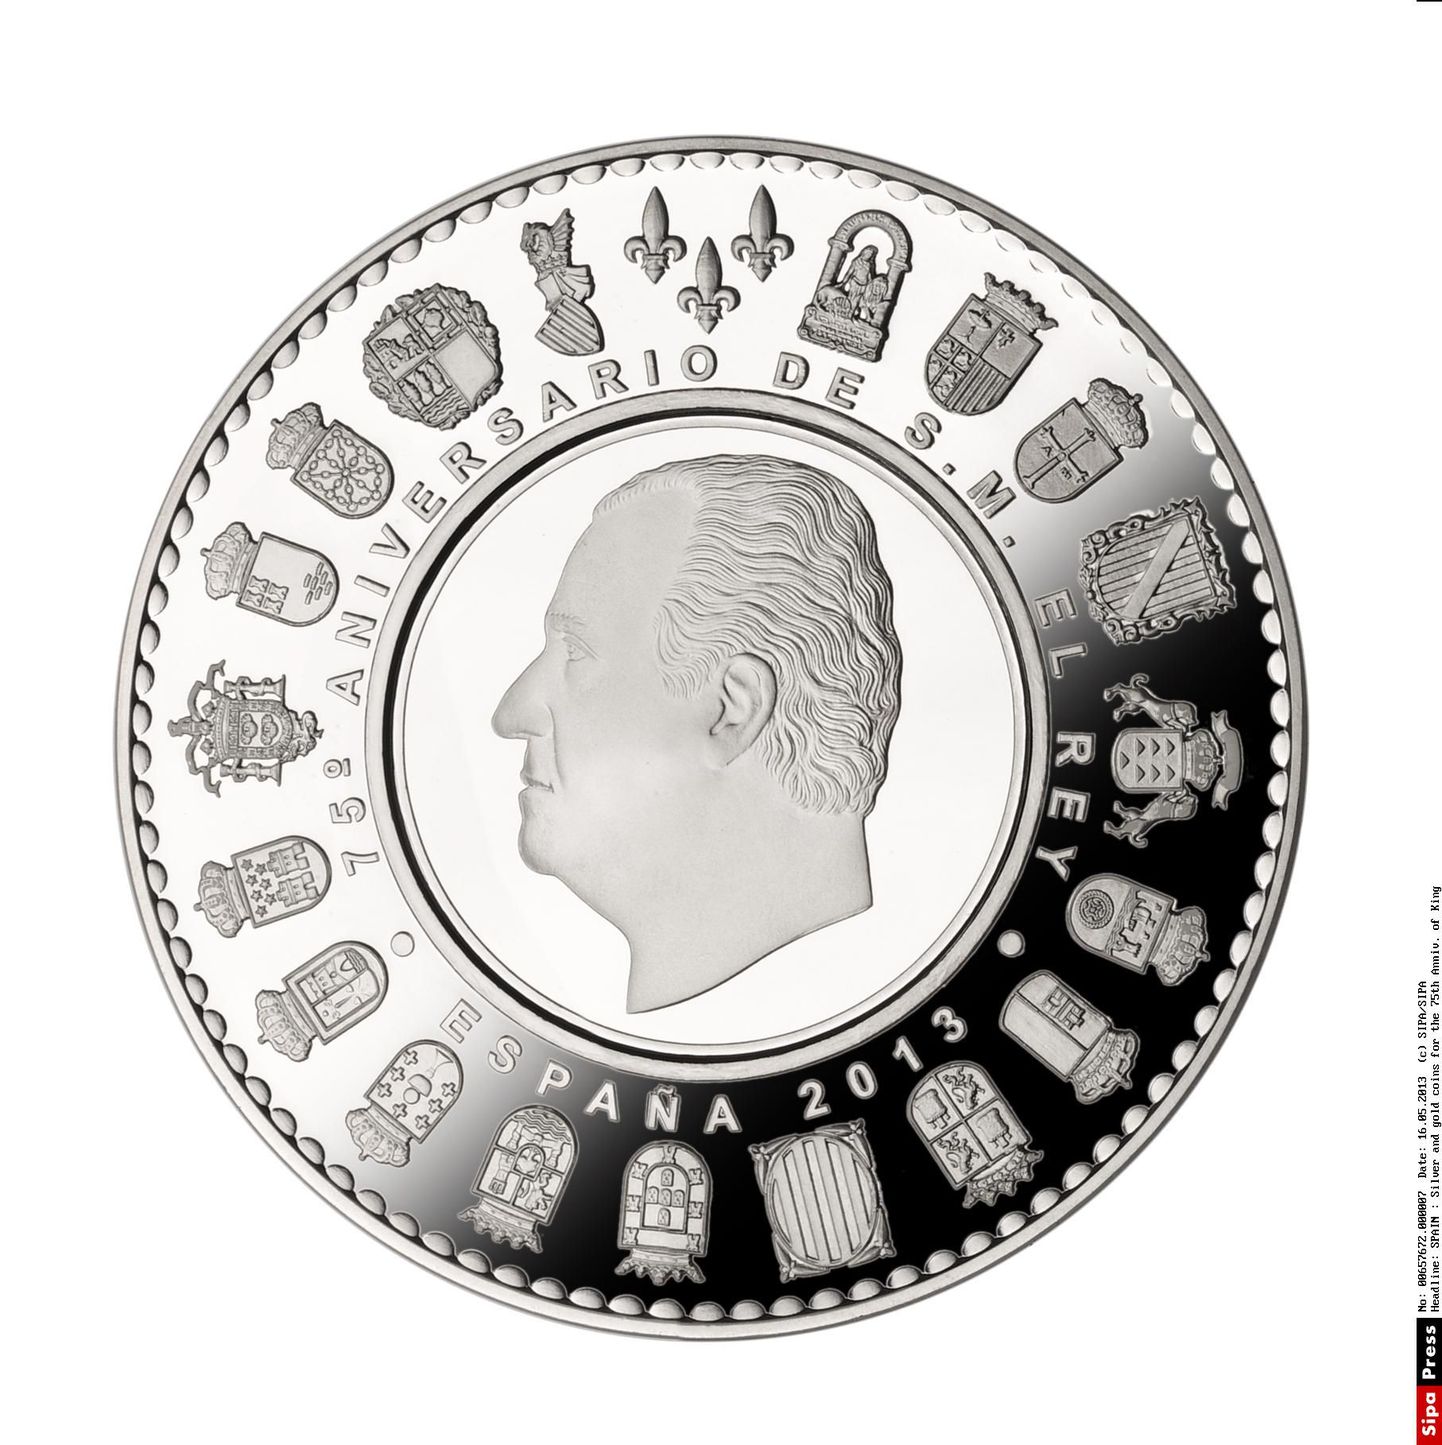 Hispaania kuninga Juan Carlose kujutisega 50 eurone hõbemünt.